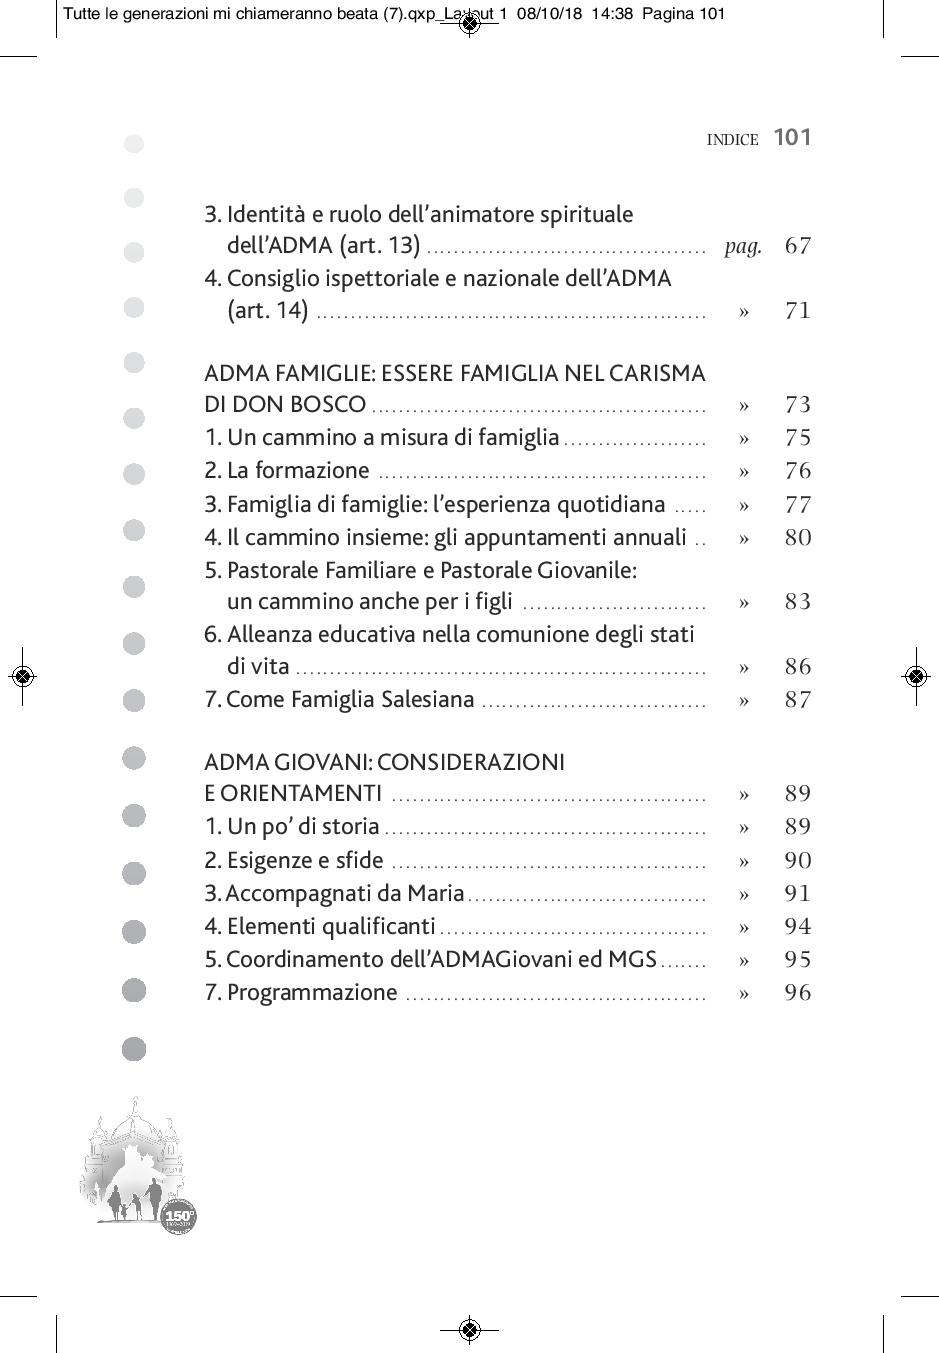 7 ADMA Tutte le generazioni - beata - IT-page-103.jpg